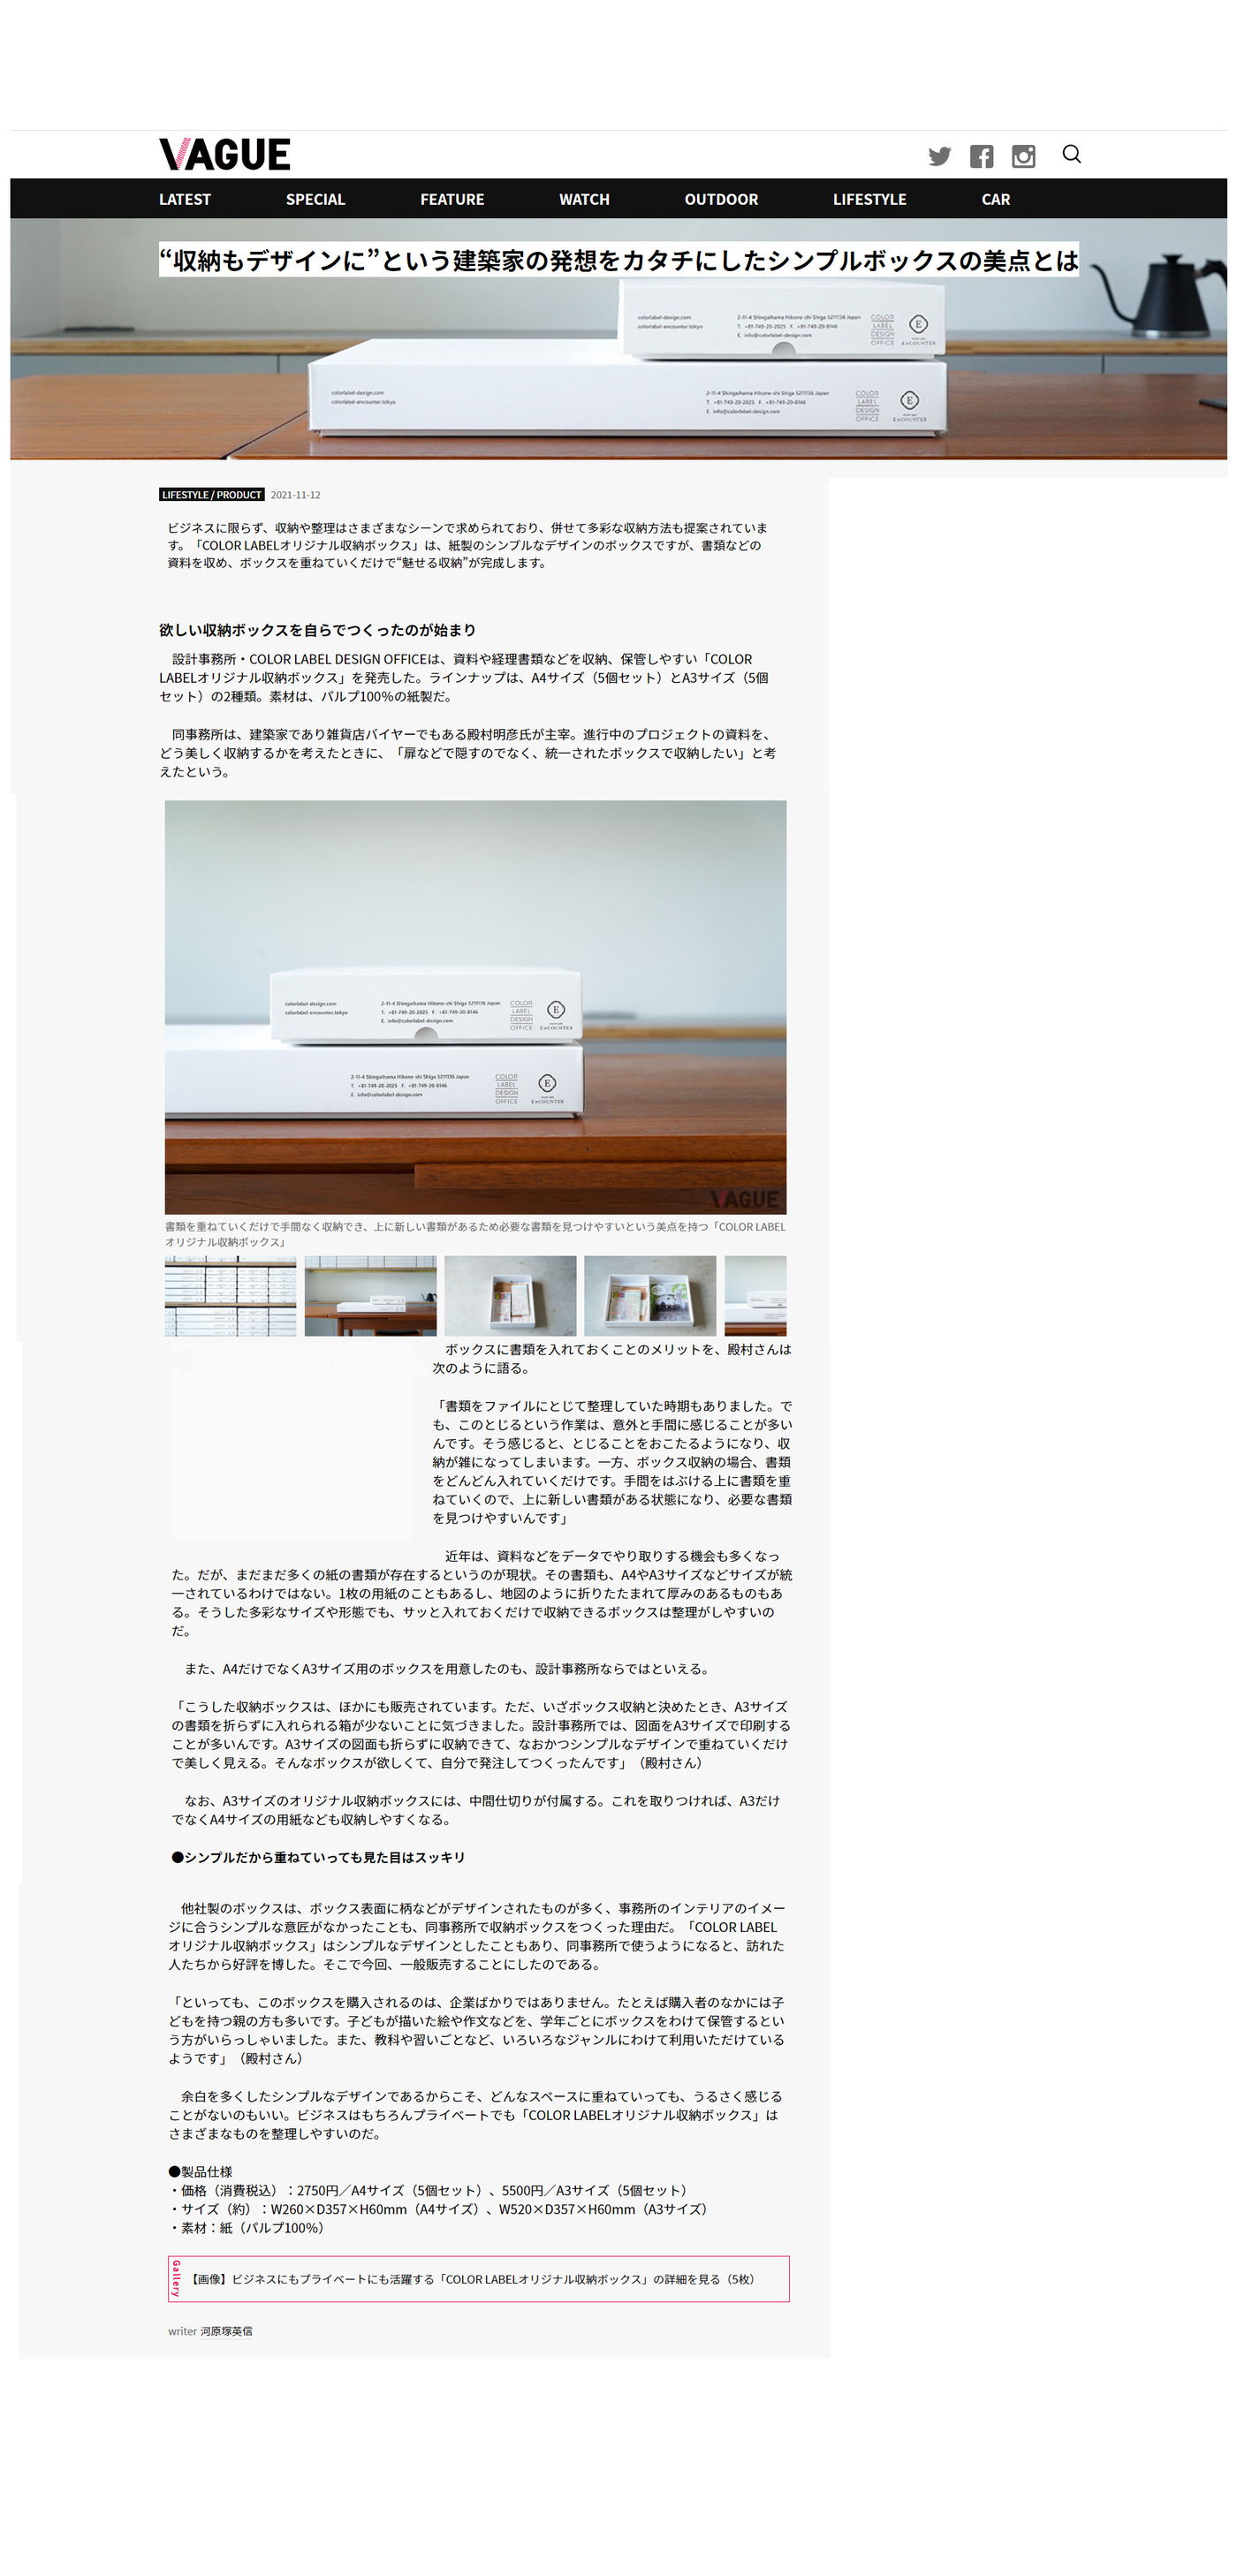 建築家 殿村明彦 オリジナル収納ボックスが、選りすぐりの「ホンモノ」のストーリーを届けるWEBメディア『VAGUE』に特集されました。